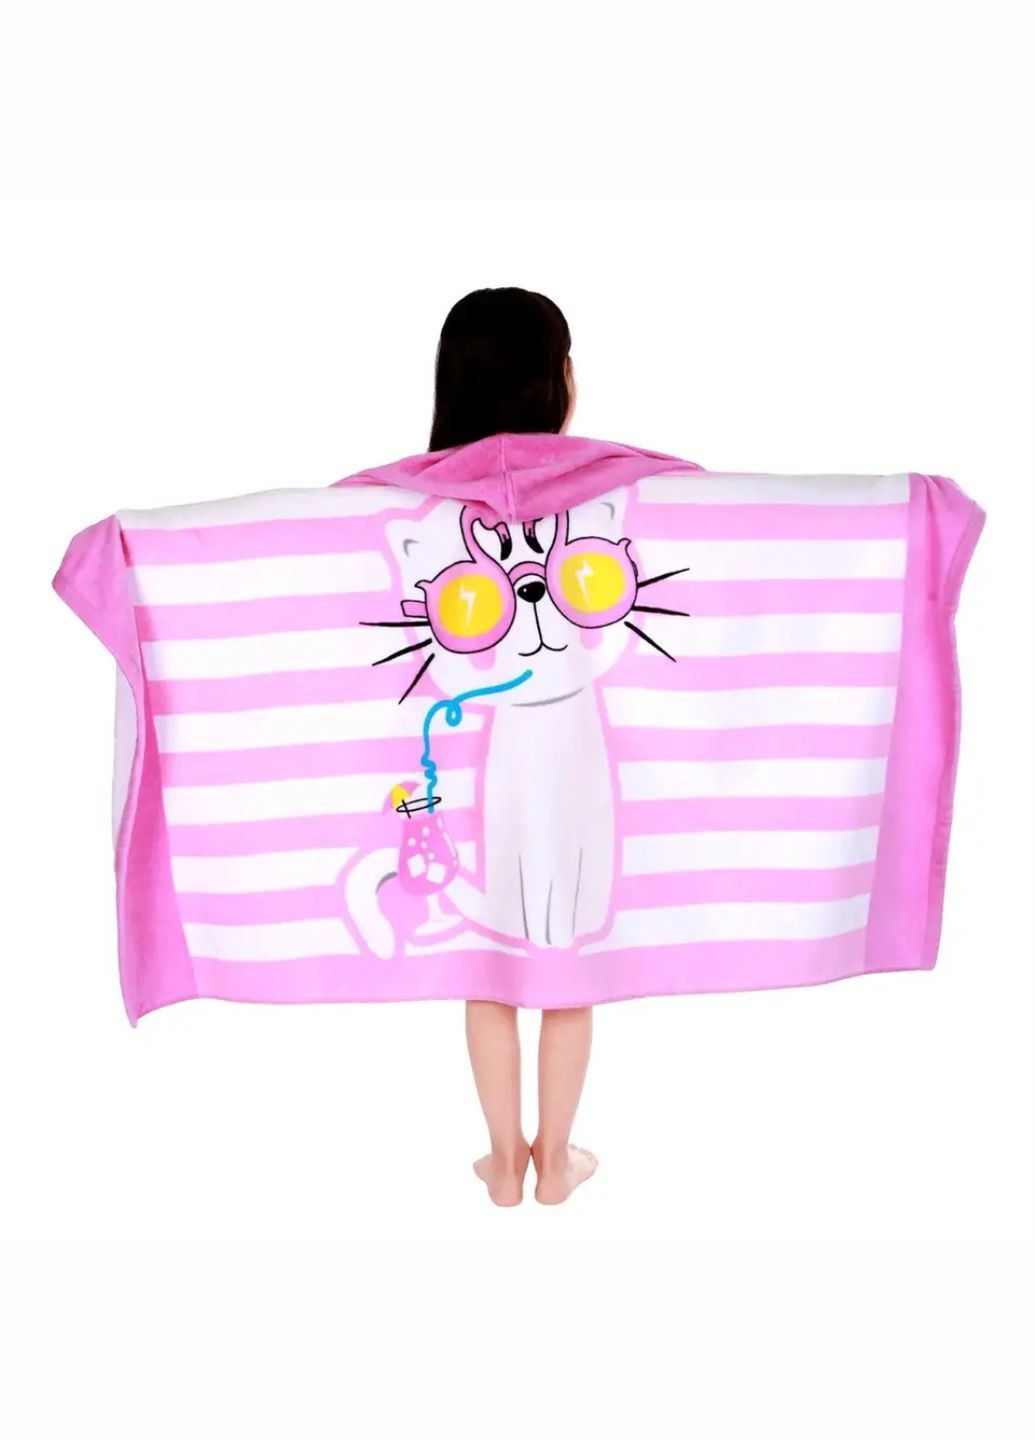 Lovely Svi детское пляжное полотенце с капюшоном пончо ( махра 76 х127 см от 3-12 лет) в бассейн китик розовый полоска розовый производство - Китай